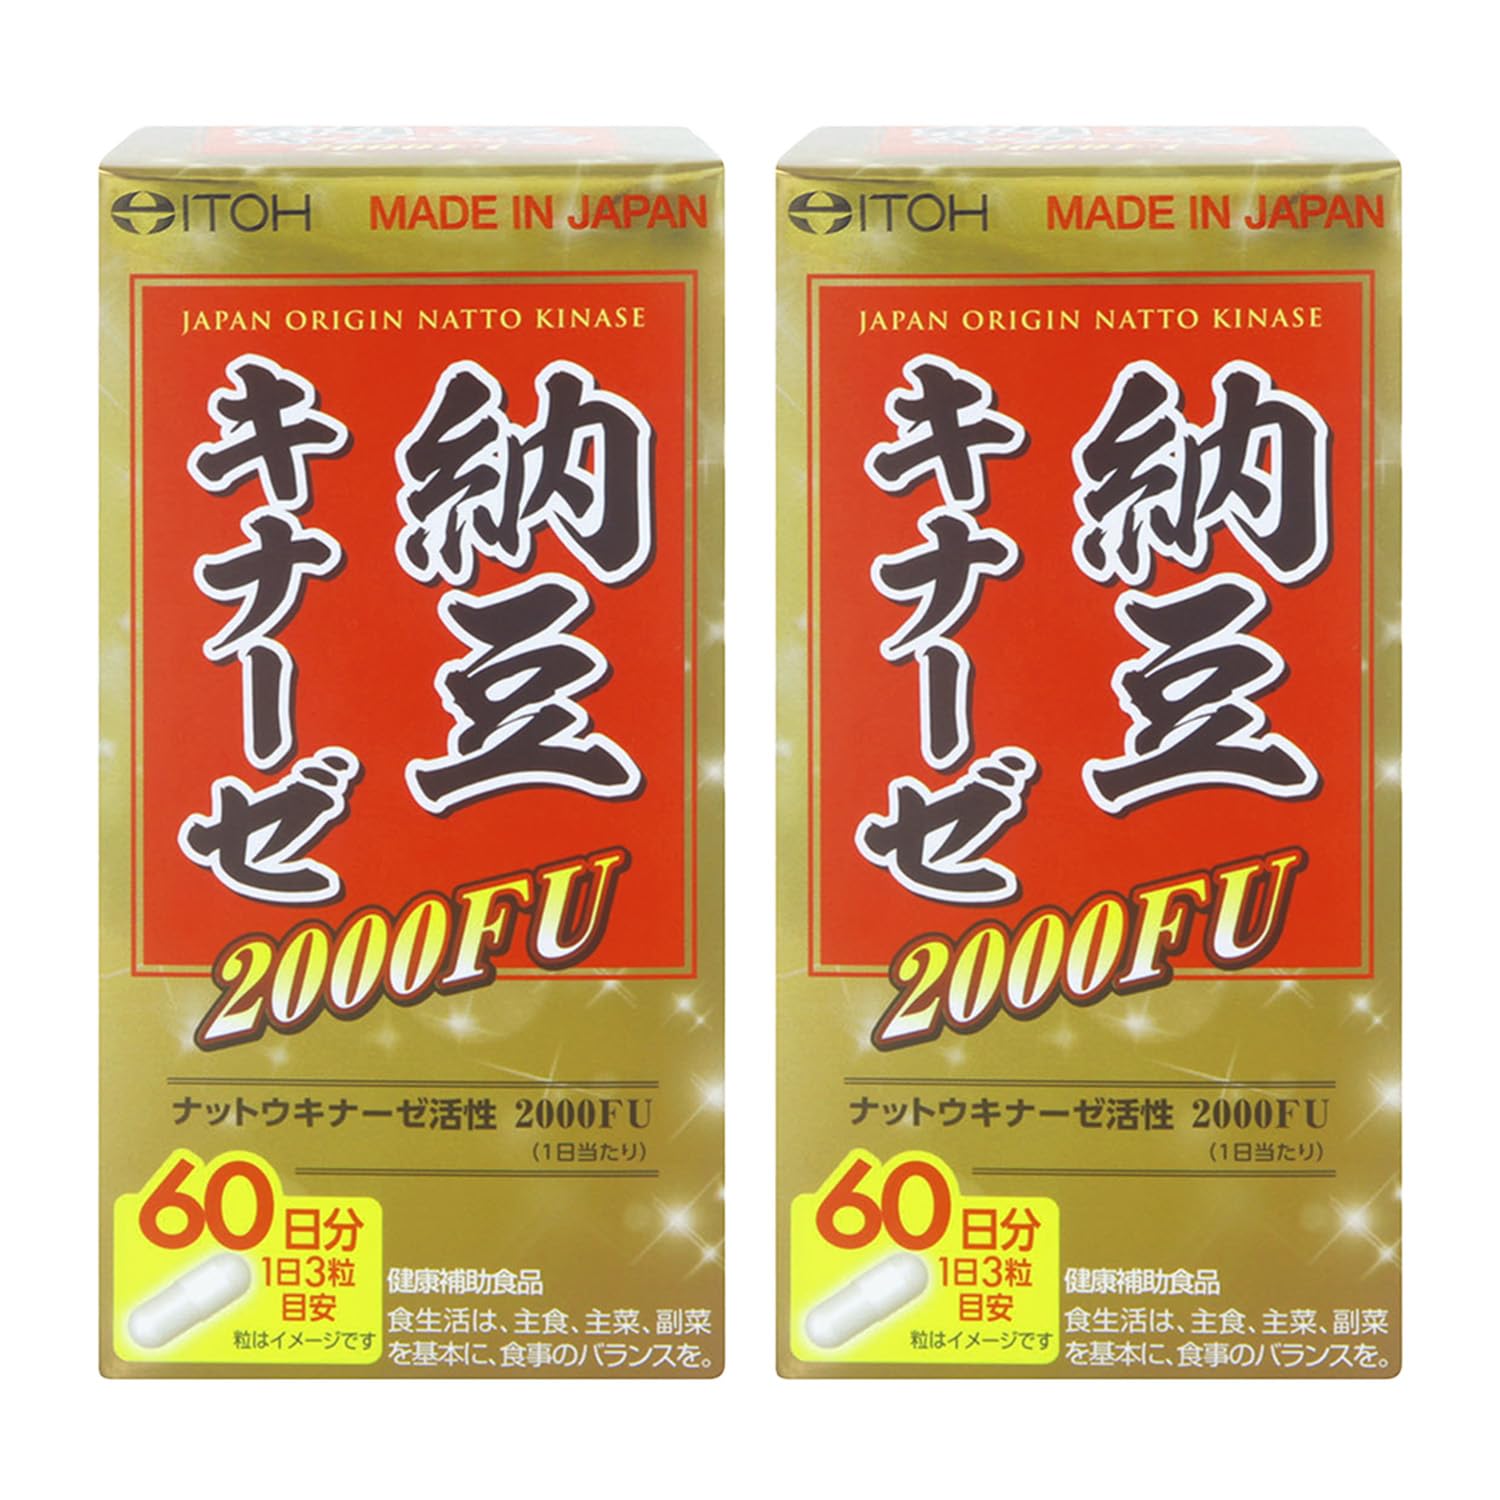 井藤漢方製薬 納豆キナーゼ 2000FU 約60日分 健康サポート ナットウキナーゼ 健康補助食品×2個